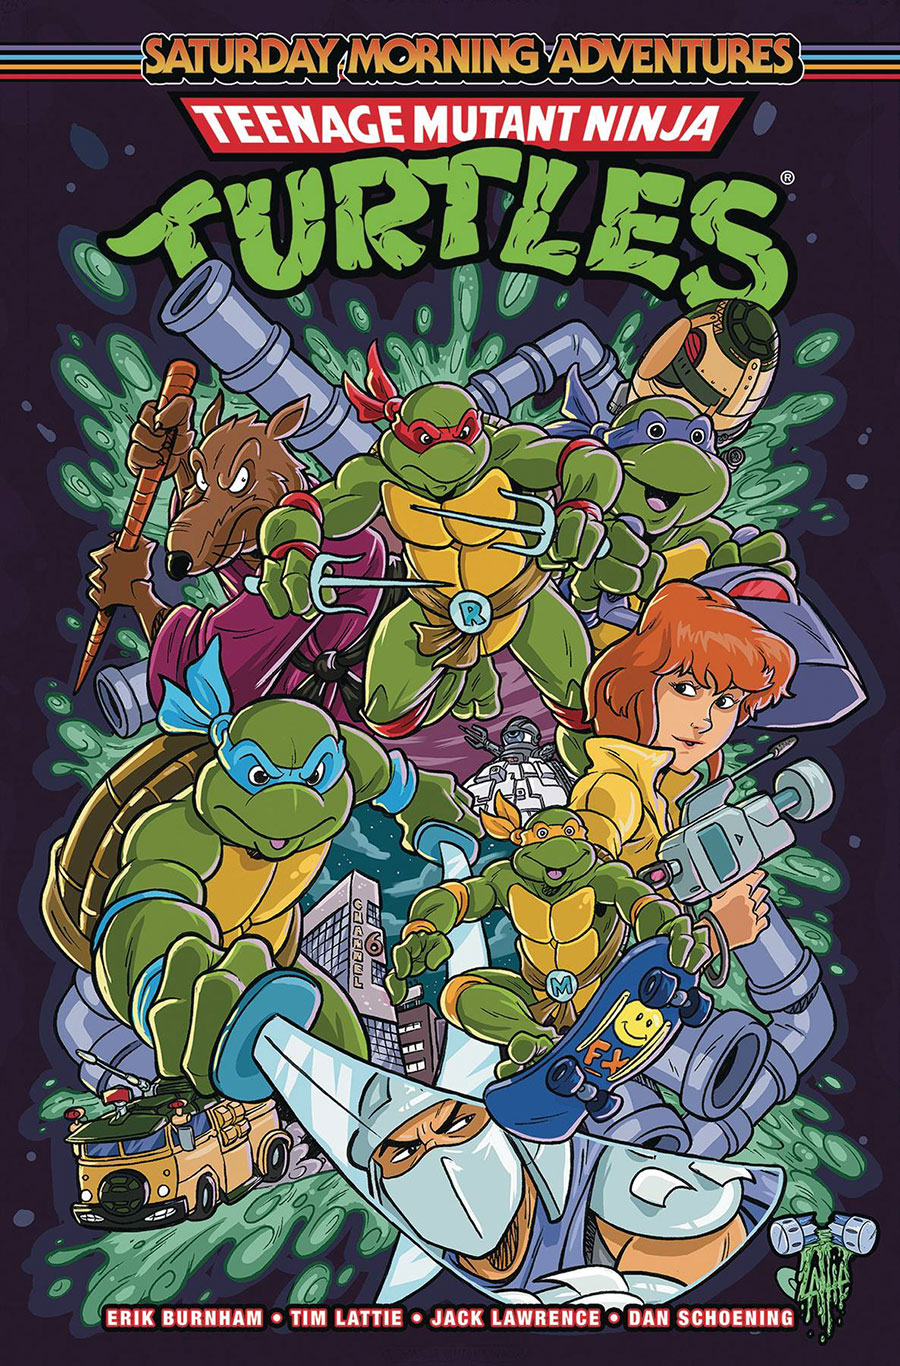 Teenage Mutant Ninja Turtles Saturday Morning Adventures Vol 2 TP